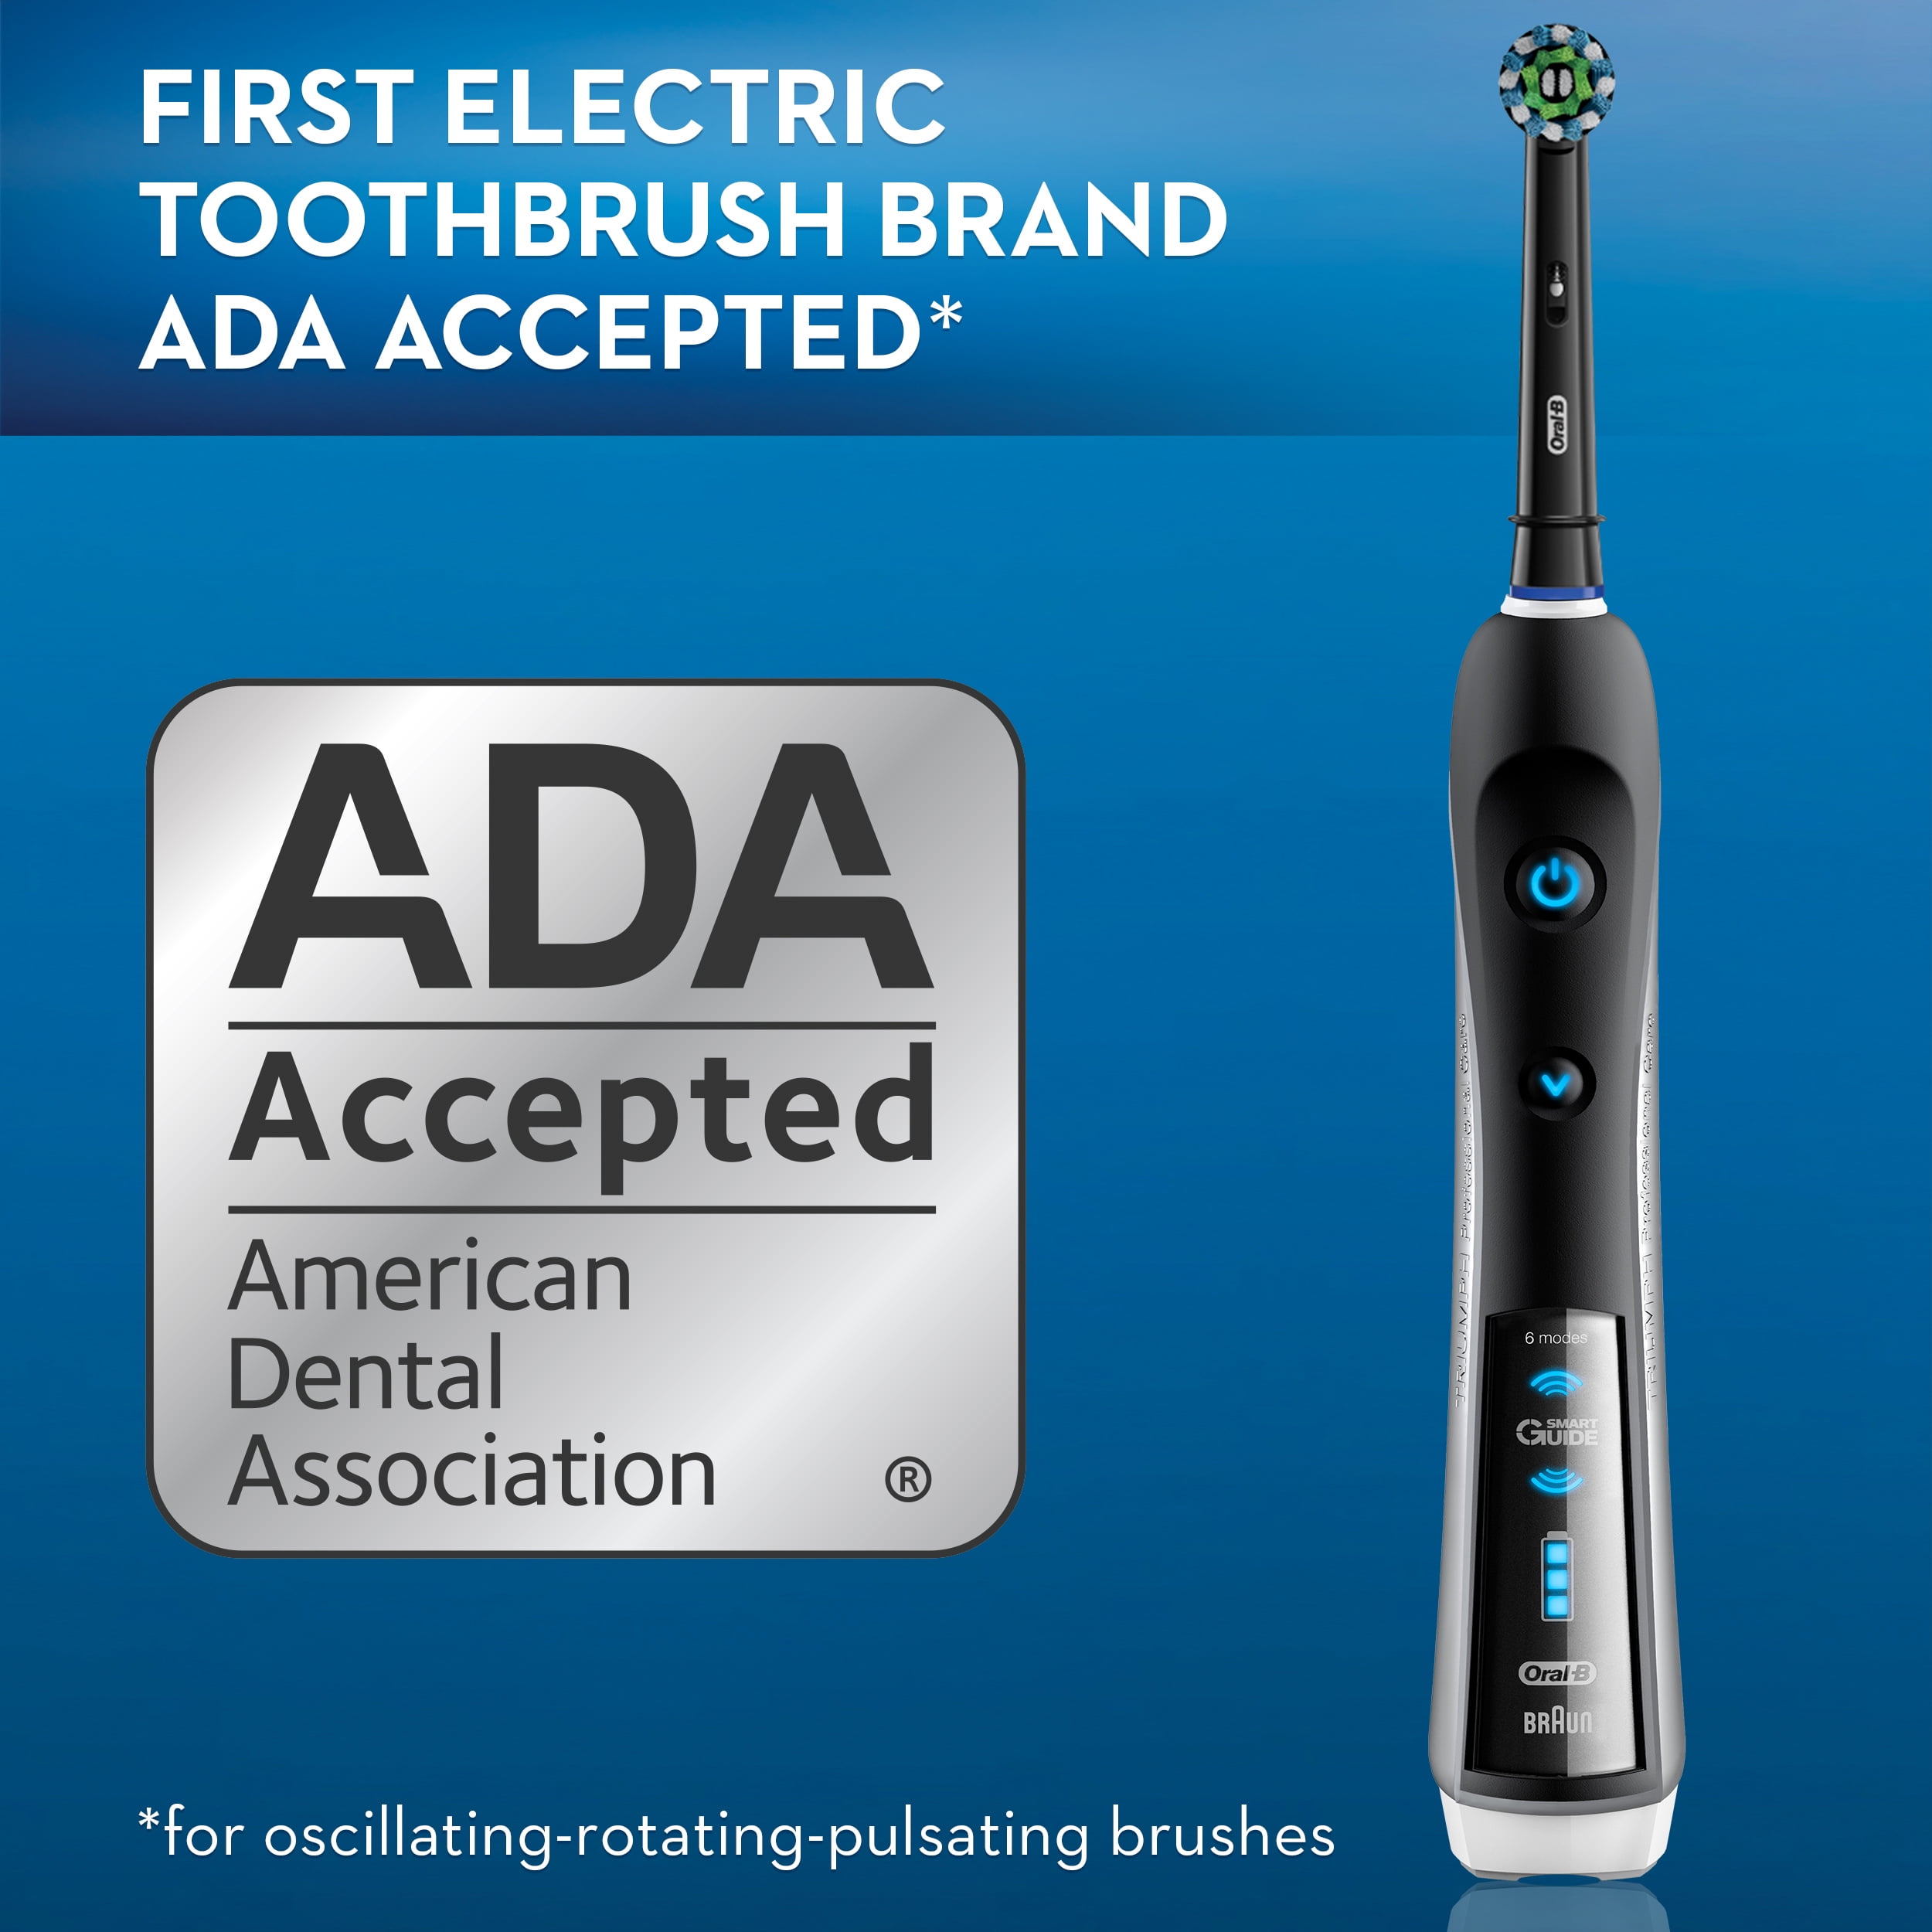 gazon Integratie Schijn Oral-B Smart Series 5000 Rechargeable Electric Toothbrush, Black -  Walmart.com